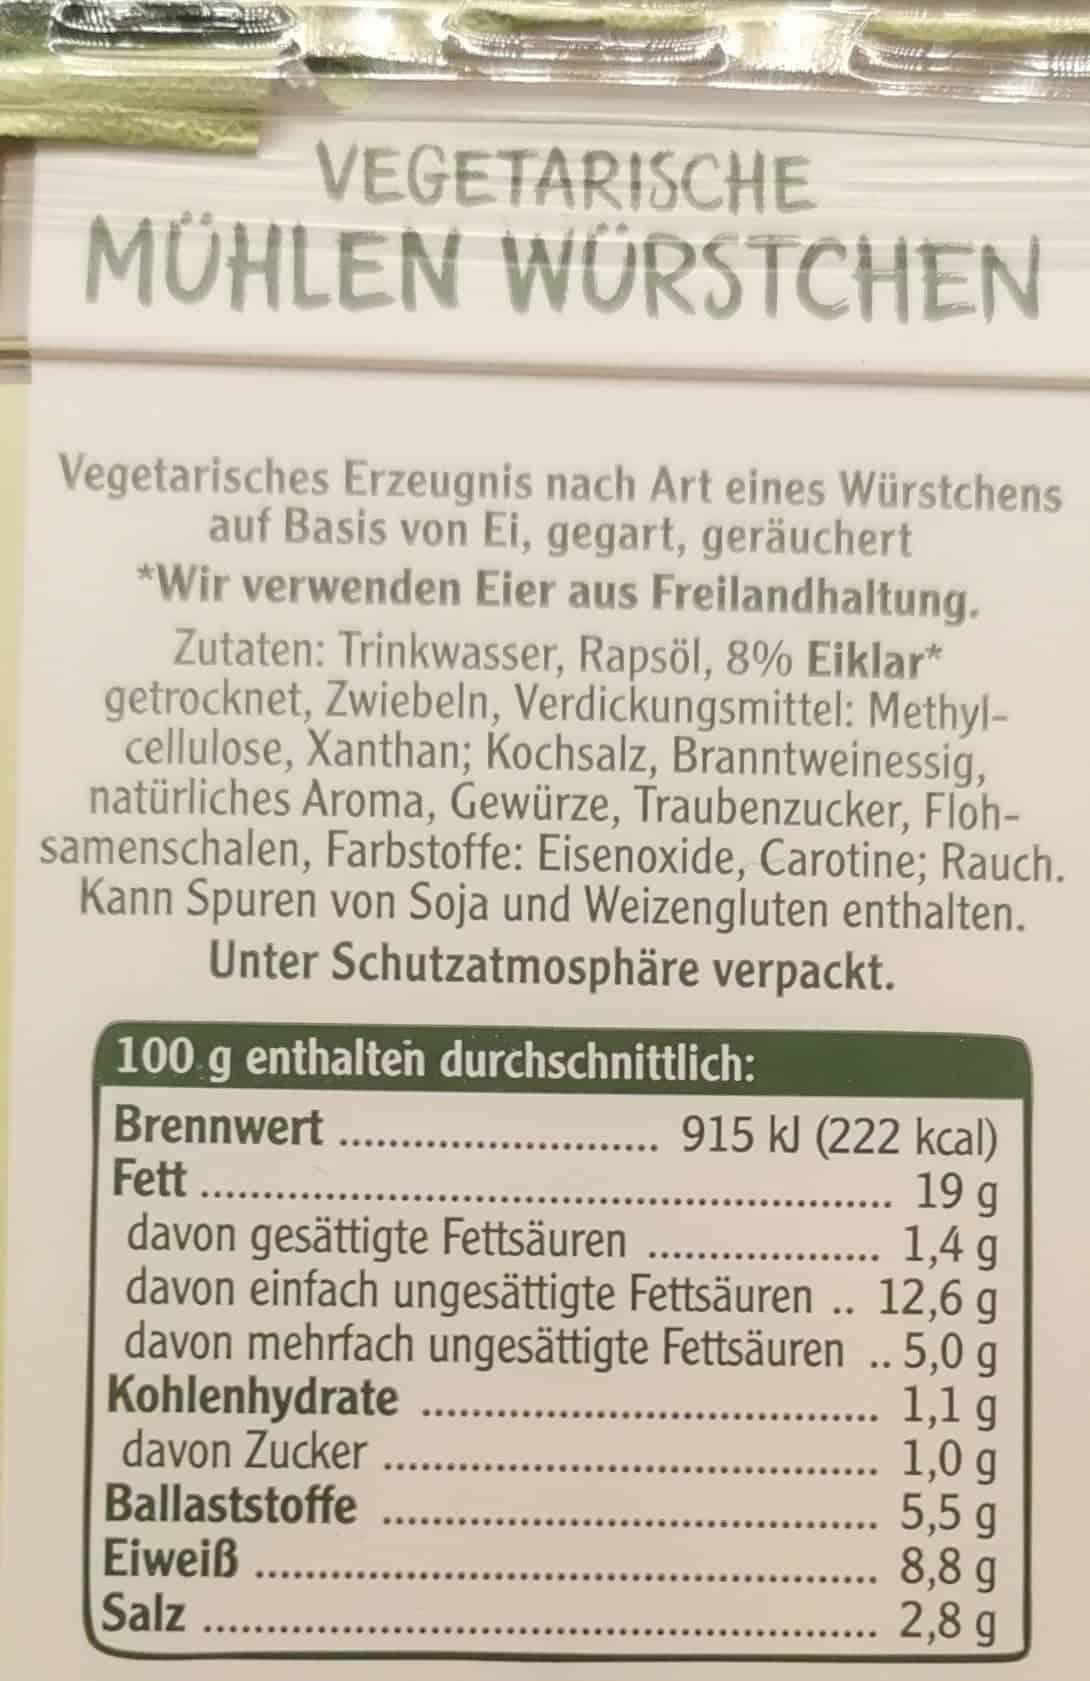 Rügenwalder Mühle: Vegetarische Mühlen Würstchen Inhaltsstoffe & Nährwerte